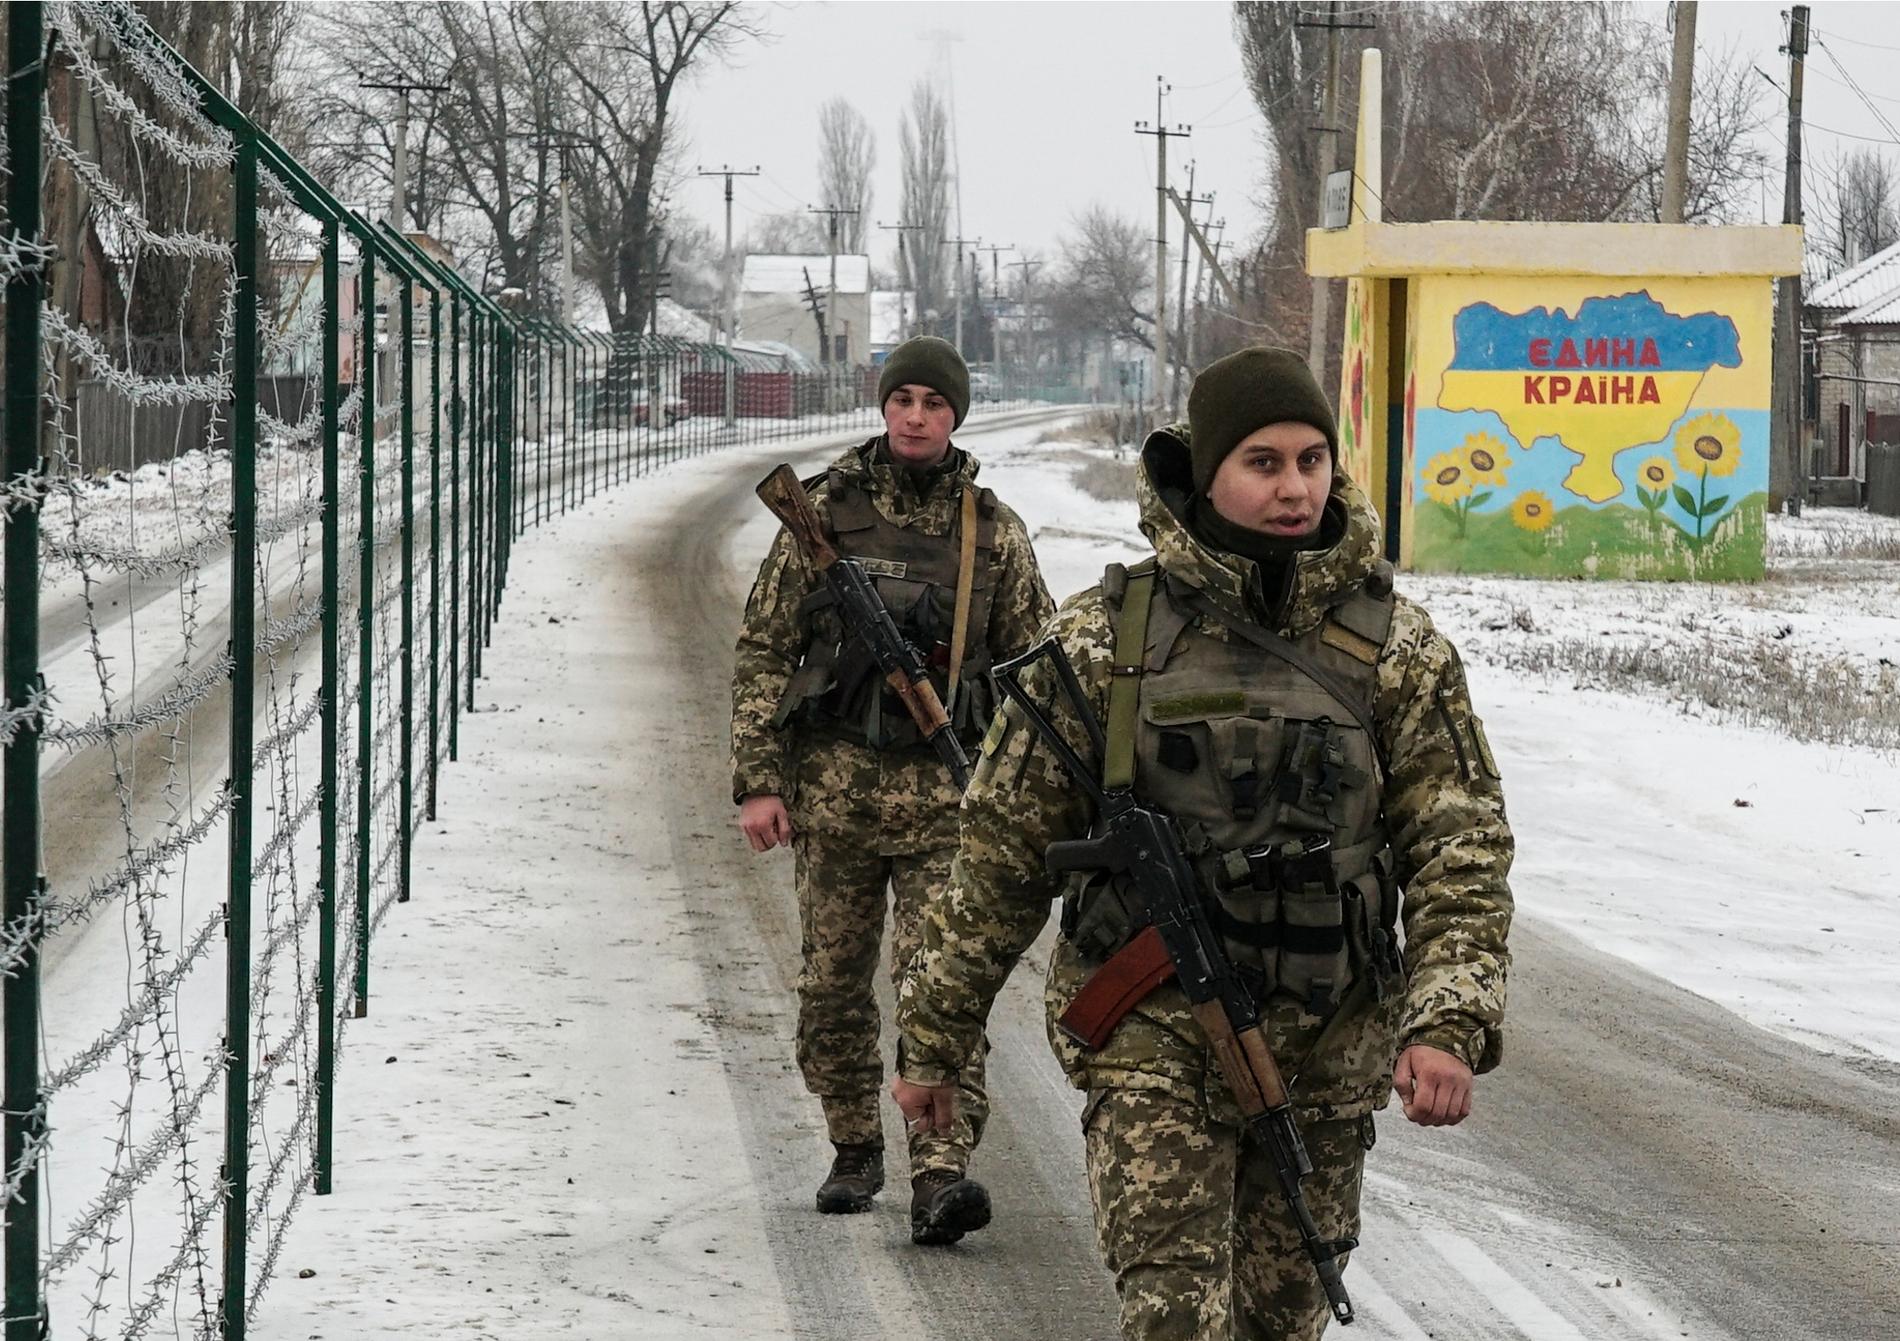 Gränsvakter i Milove i Ukraina i början av december när undantagstillståndet var nytt och många känsliga platser fick stärkt bevakning.